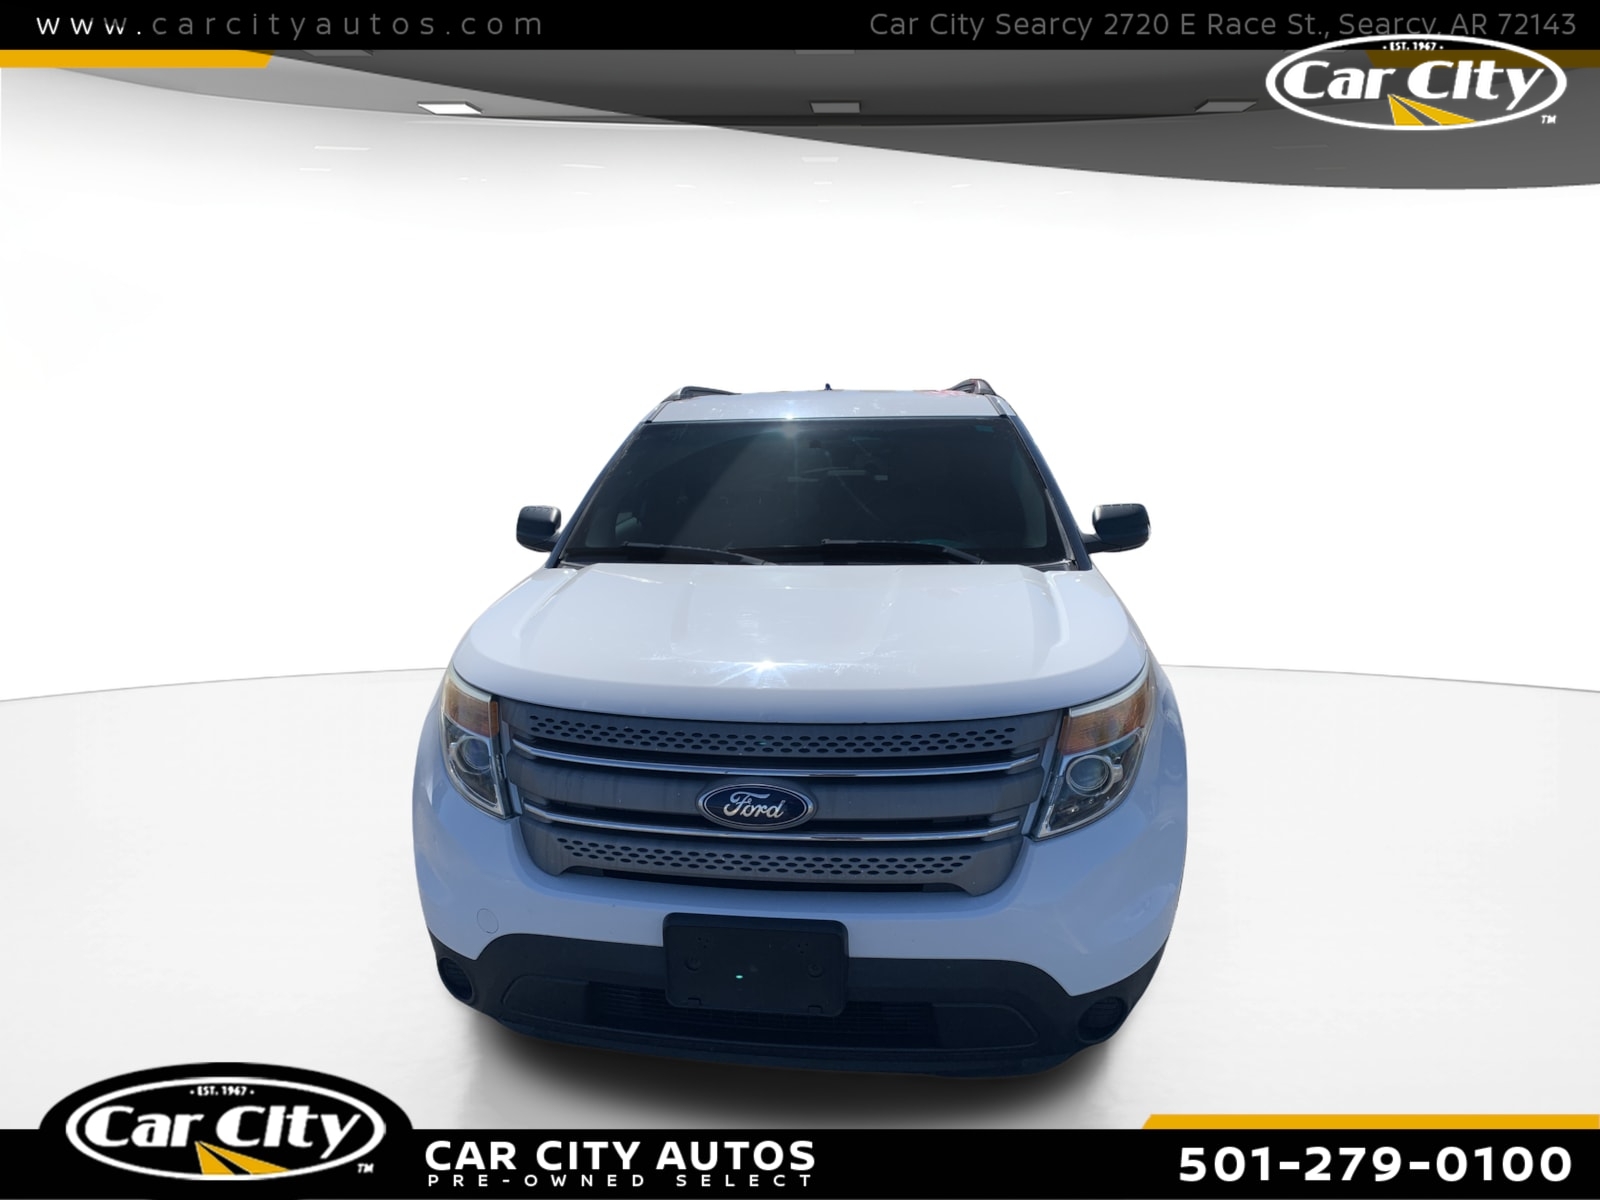 2013 Ford Explorer Base  - DGA03294  - Car City Autos